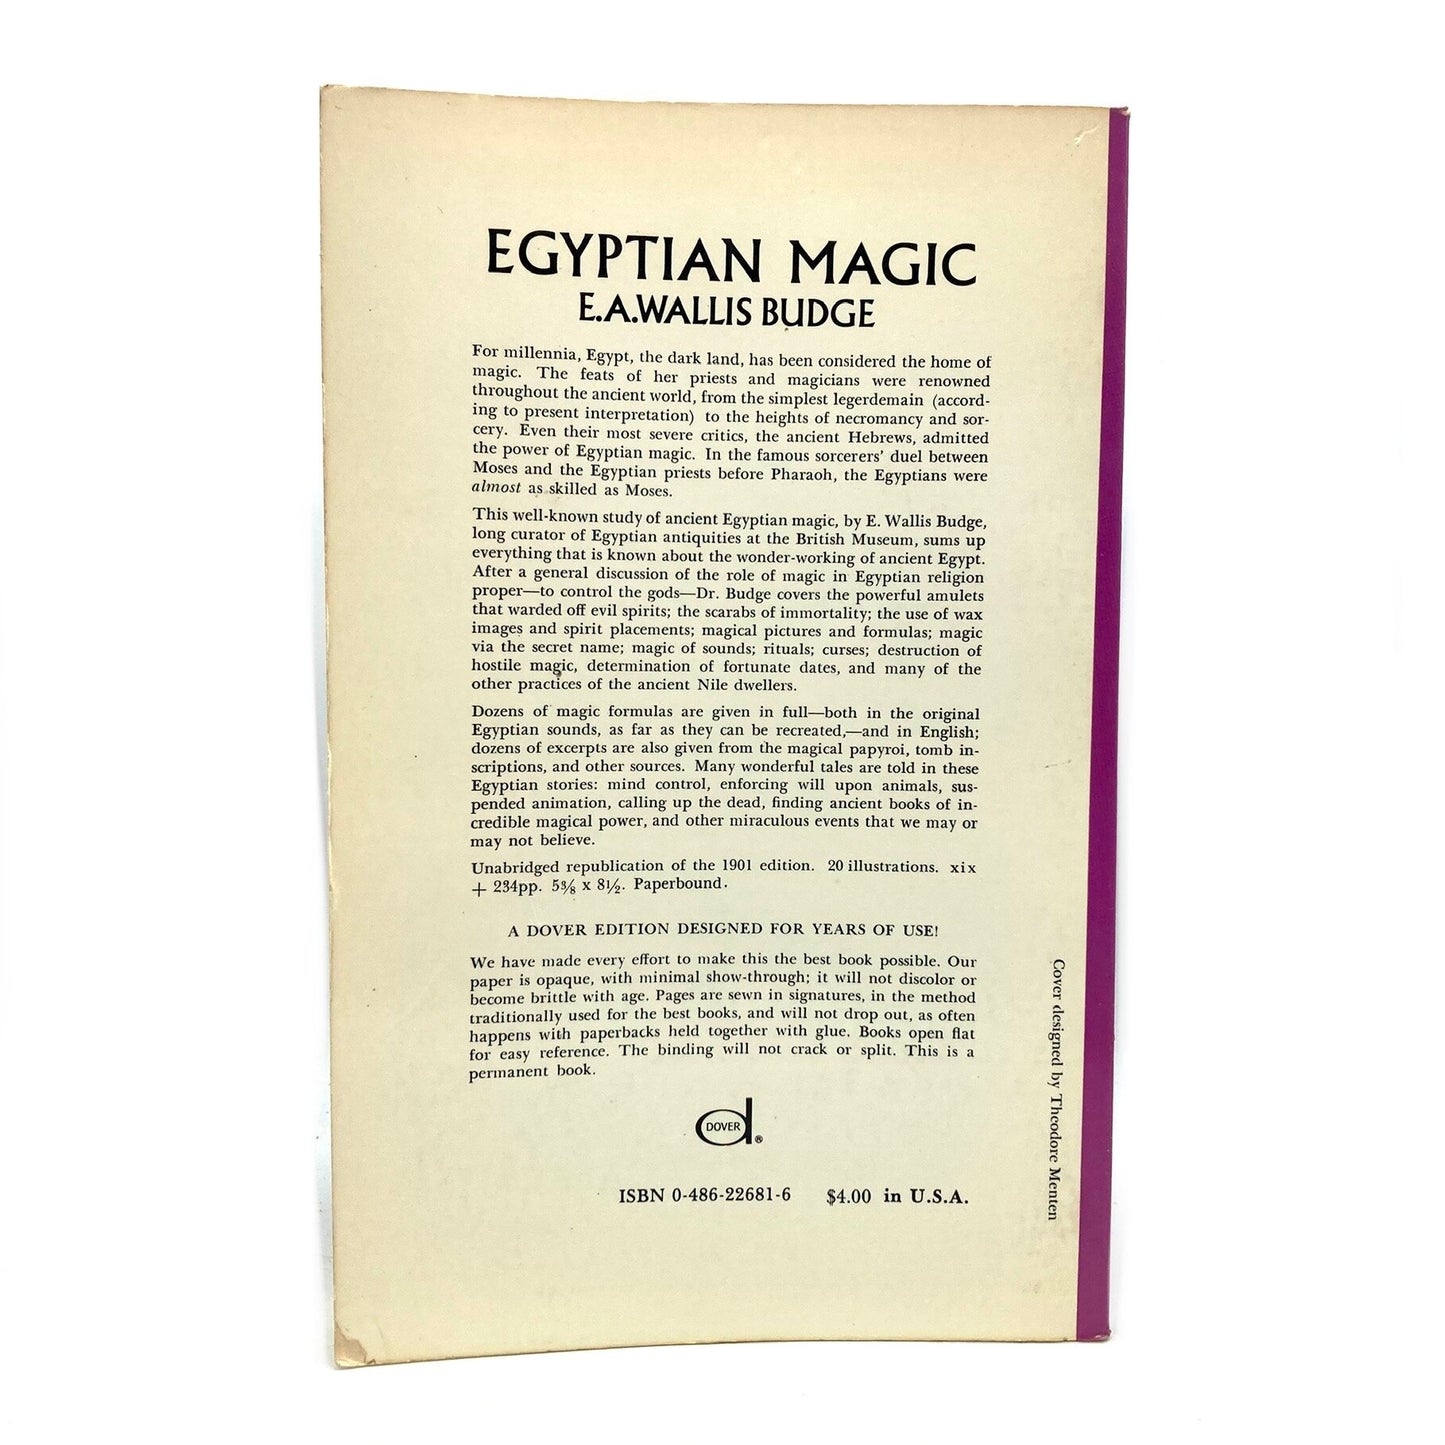 BUDGE, E.A. Wallis "Egyptian Magic" [Dover, 1971] - Buzz Bookstore